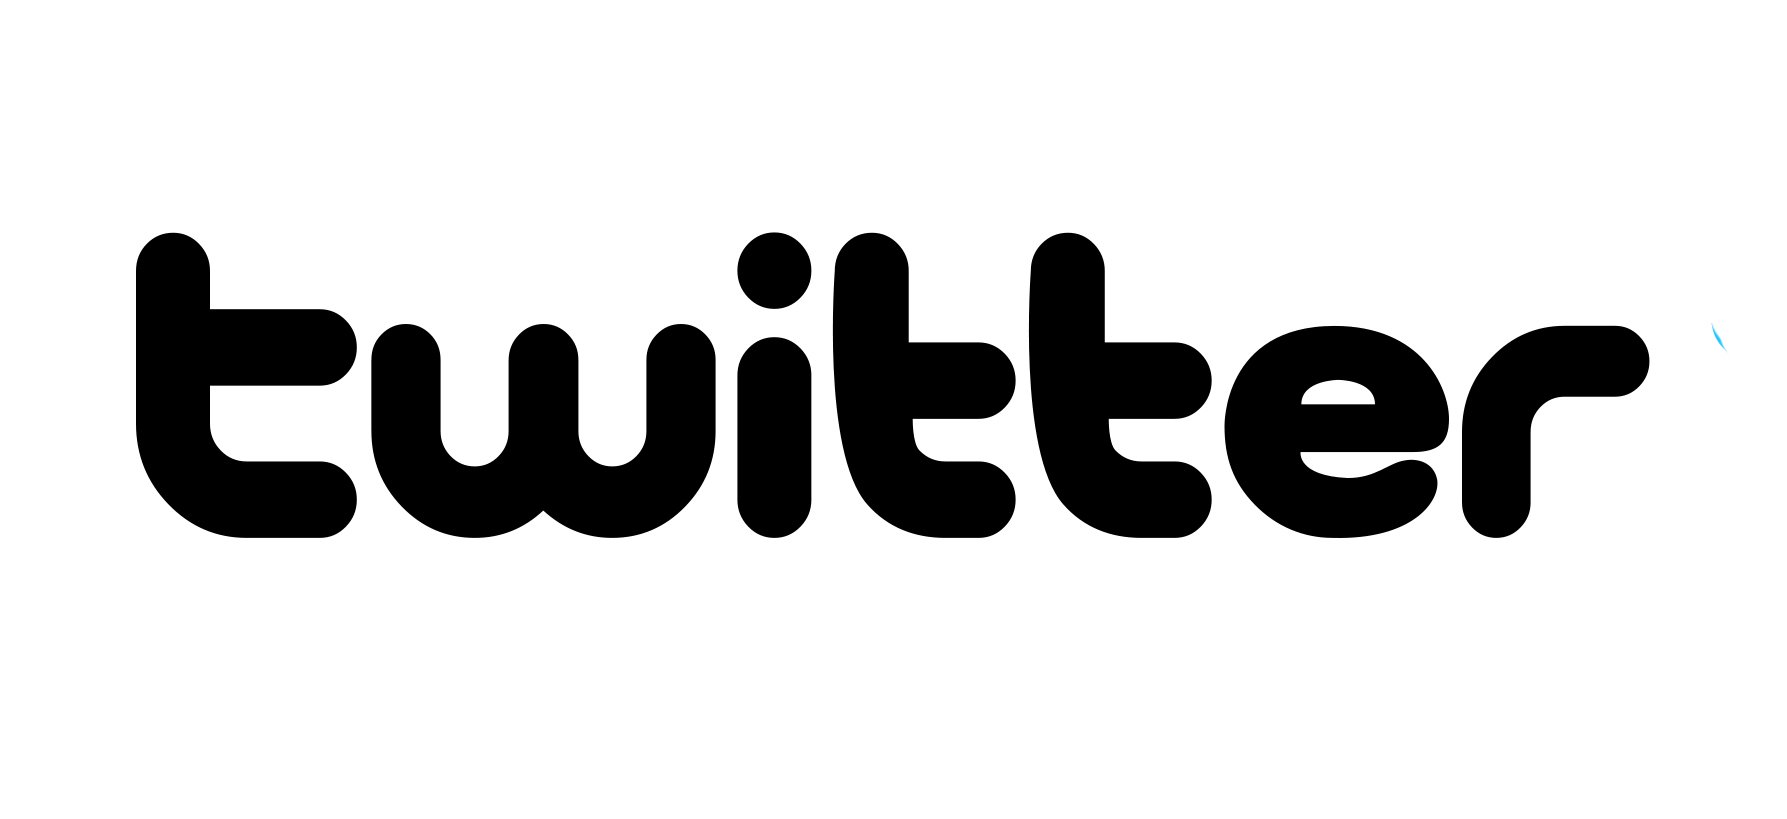 Detail Twitter Logo Black And White Nomer 38